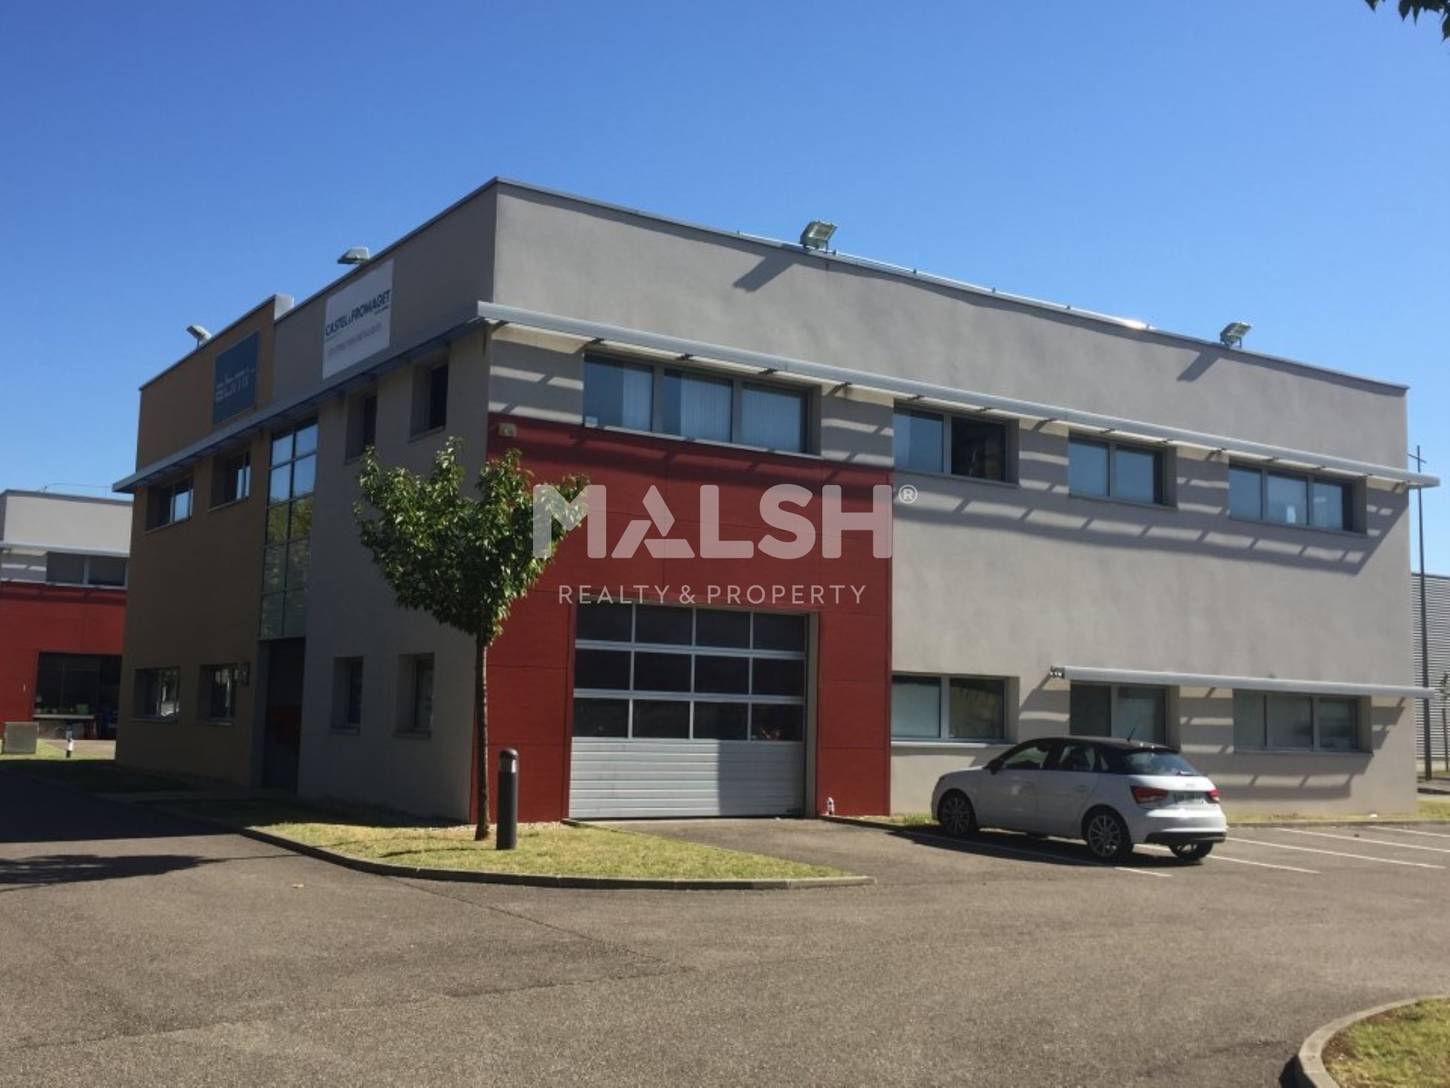 MALSH Realty & Property - Bureaux - Lyon EST (St Priest /Mi Plaine/ A43 / Eurexpo) - Saint-Priest - MD_